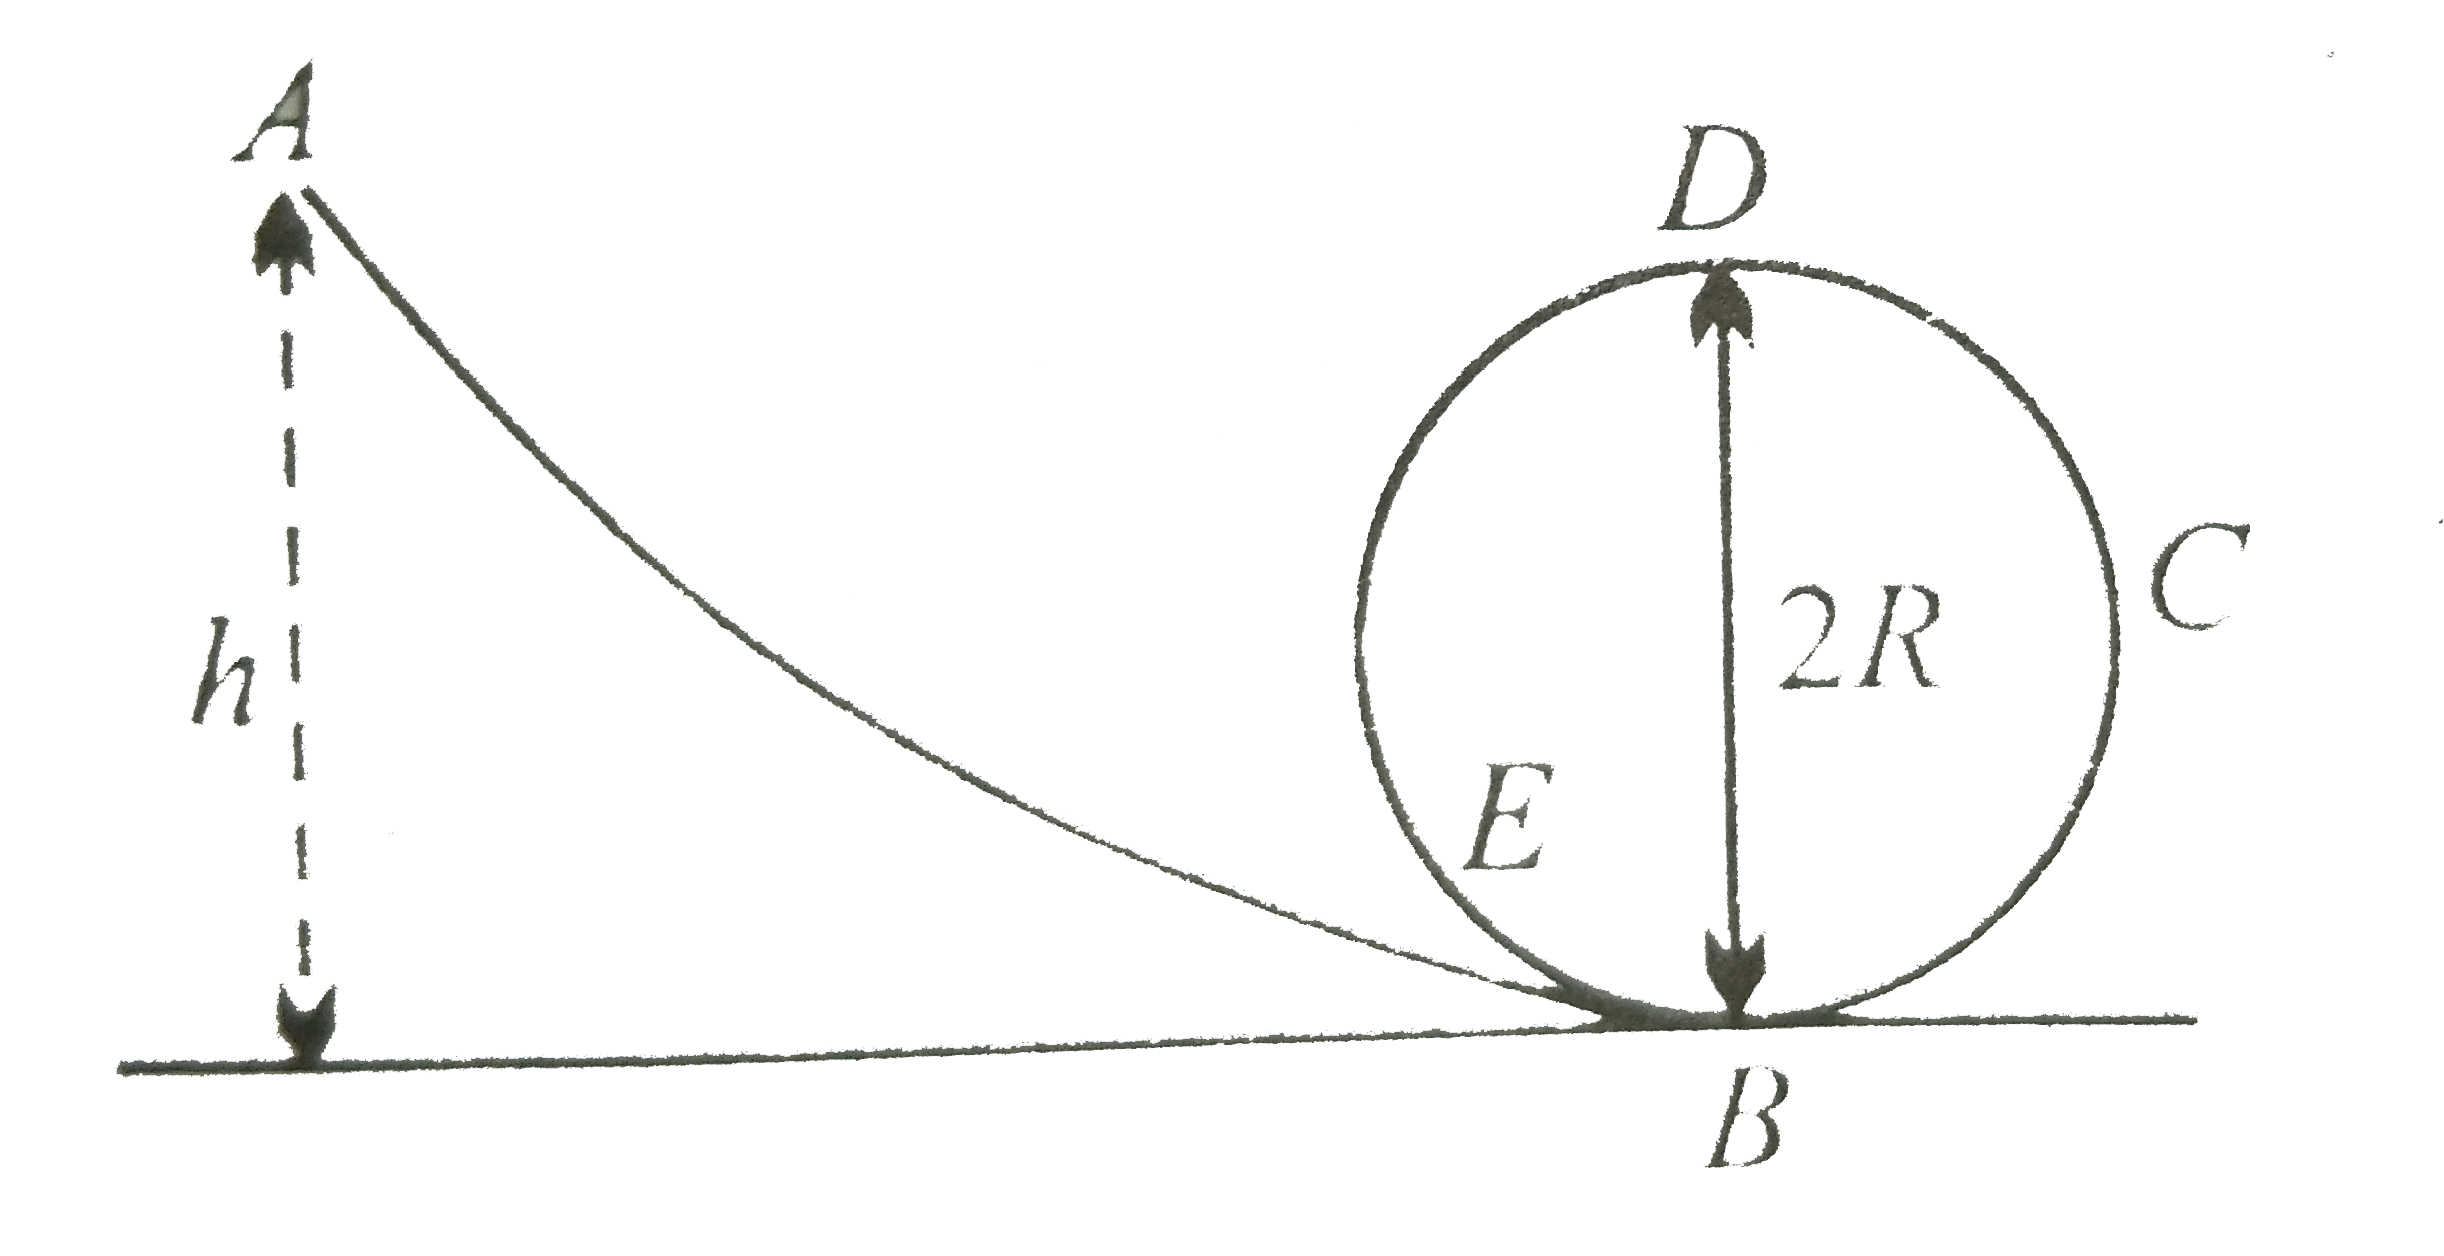 चित्र में एक घर्षण रहित ट्रेक ABCDE त्रिज्या R के वृत्ताकार  लूप में ख़त्म होता है | एक वस्तु ट्रेक के सिरे A जो  कि h=5 सेमी ऊँचा है , से फिसलती  है | लूप को पूर्ण  करने के लिए R का अधिकतम मान होगा -